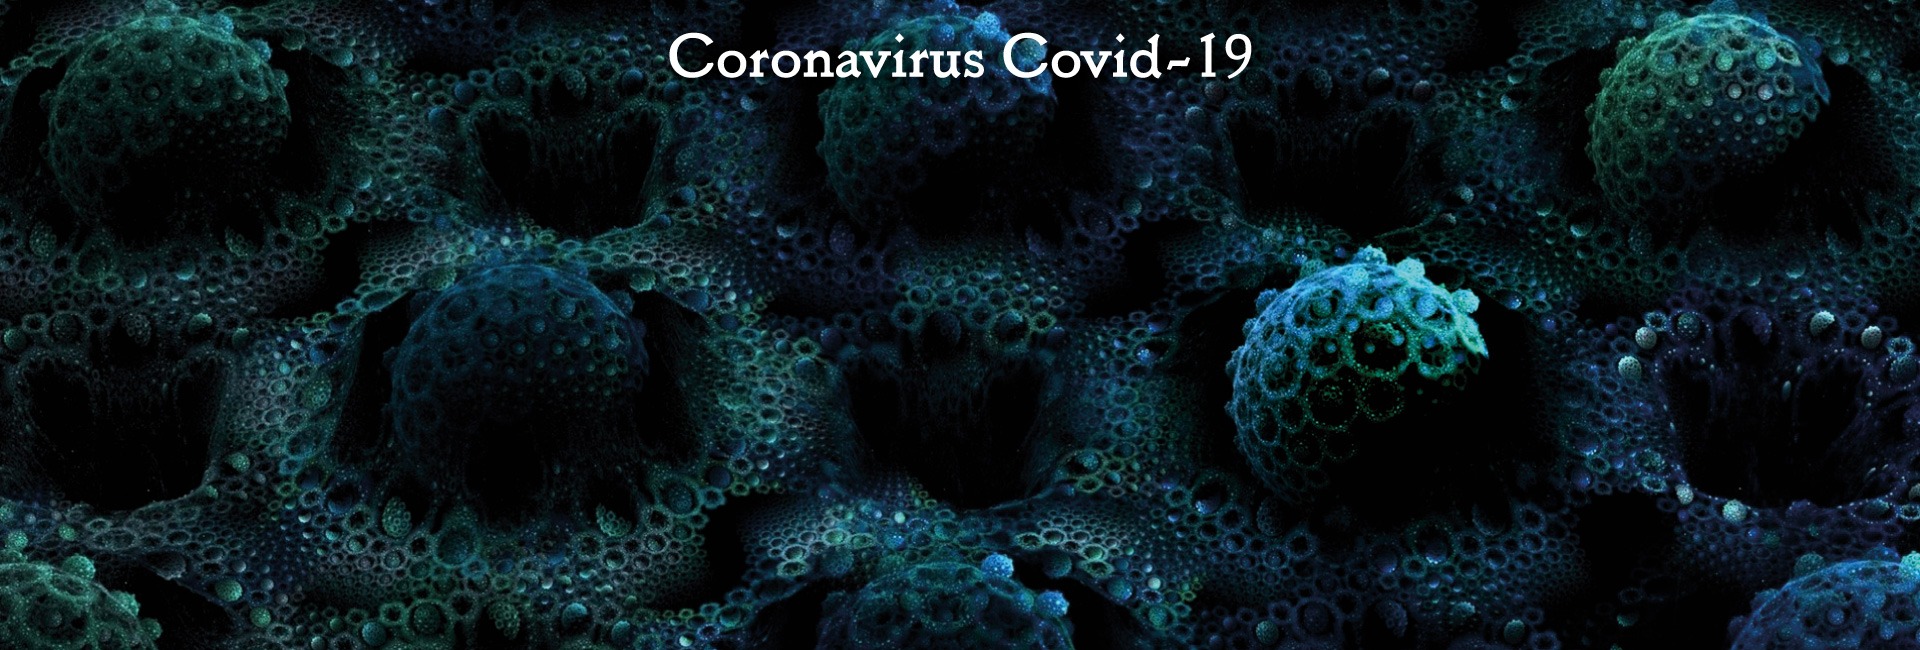 Prolongation de l’urgence sanitaire en Espagne due au coronavirus Covid-19 : annulation des concerts pour avril, mai et juin 2020